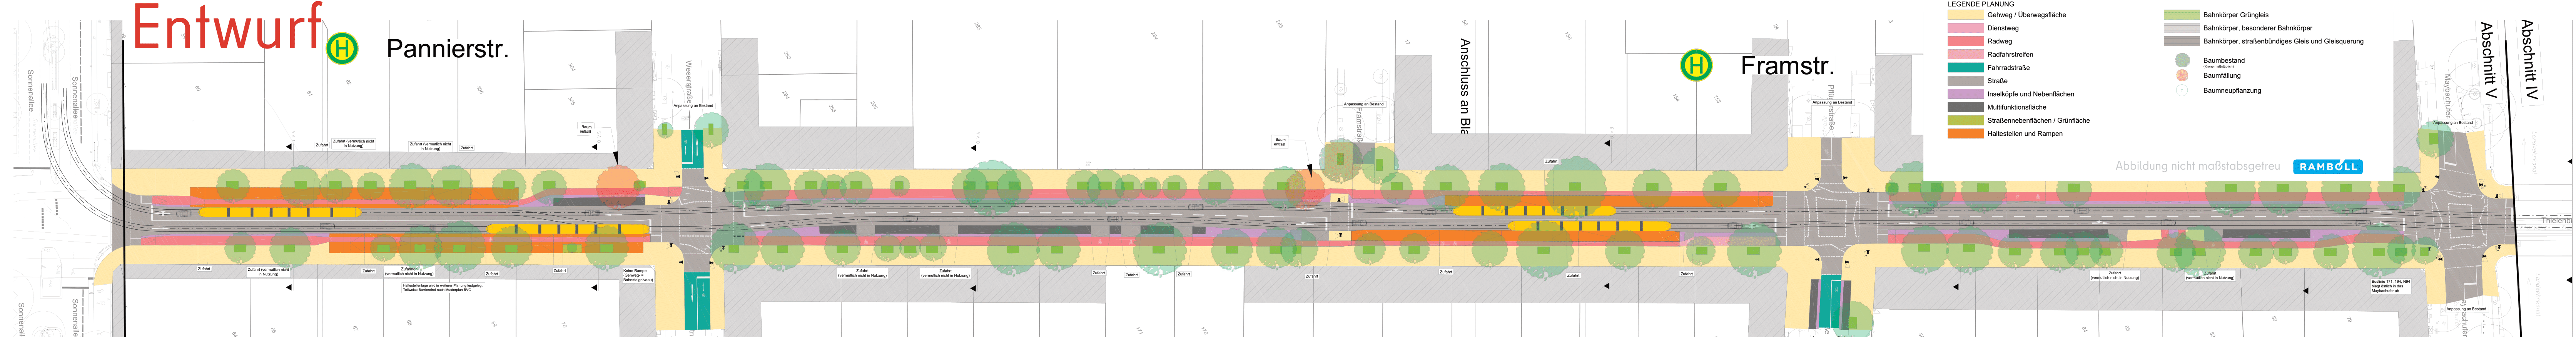 Diese Abbildung zeigt eine technische Zeichnung des Bauabschnitts Pannierstraße